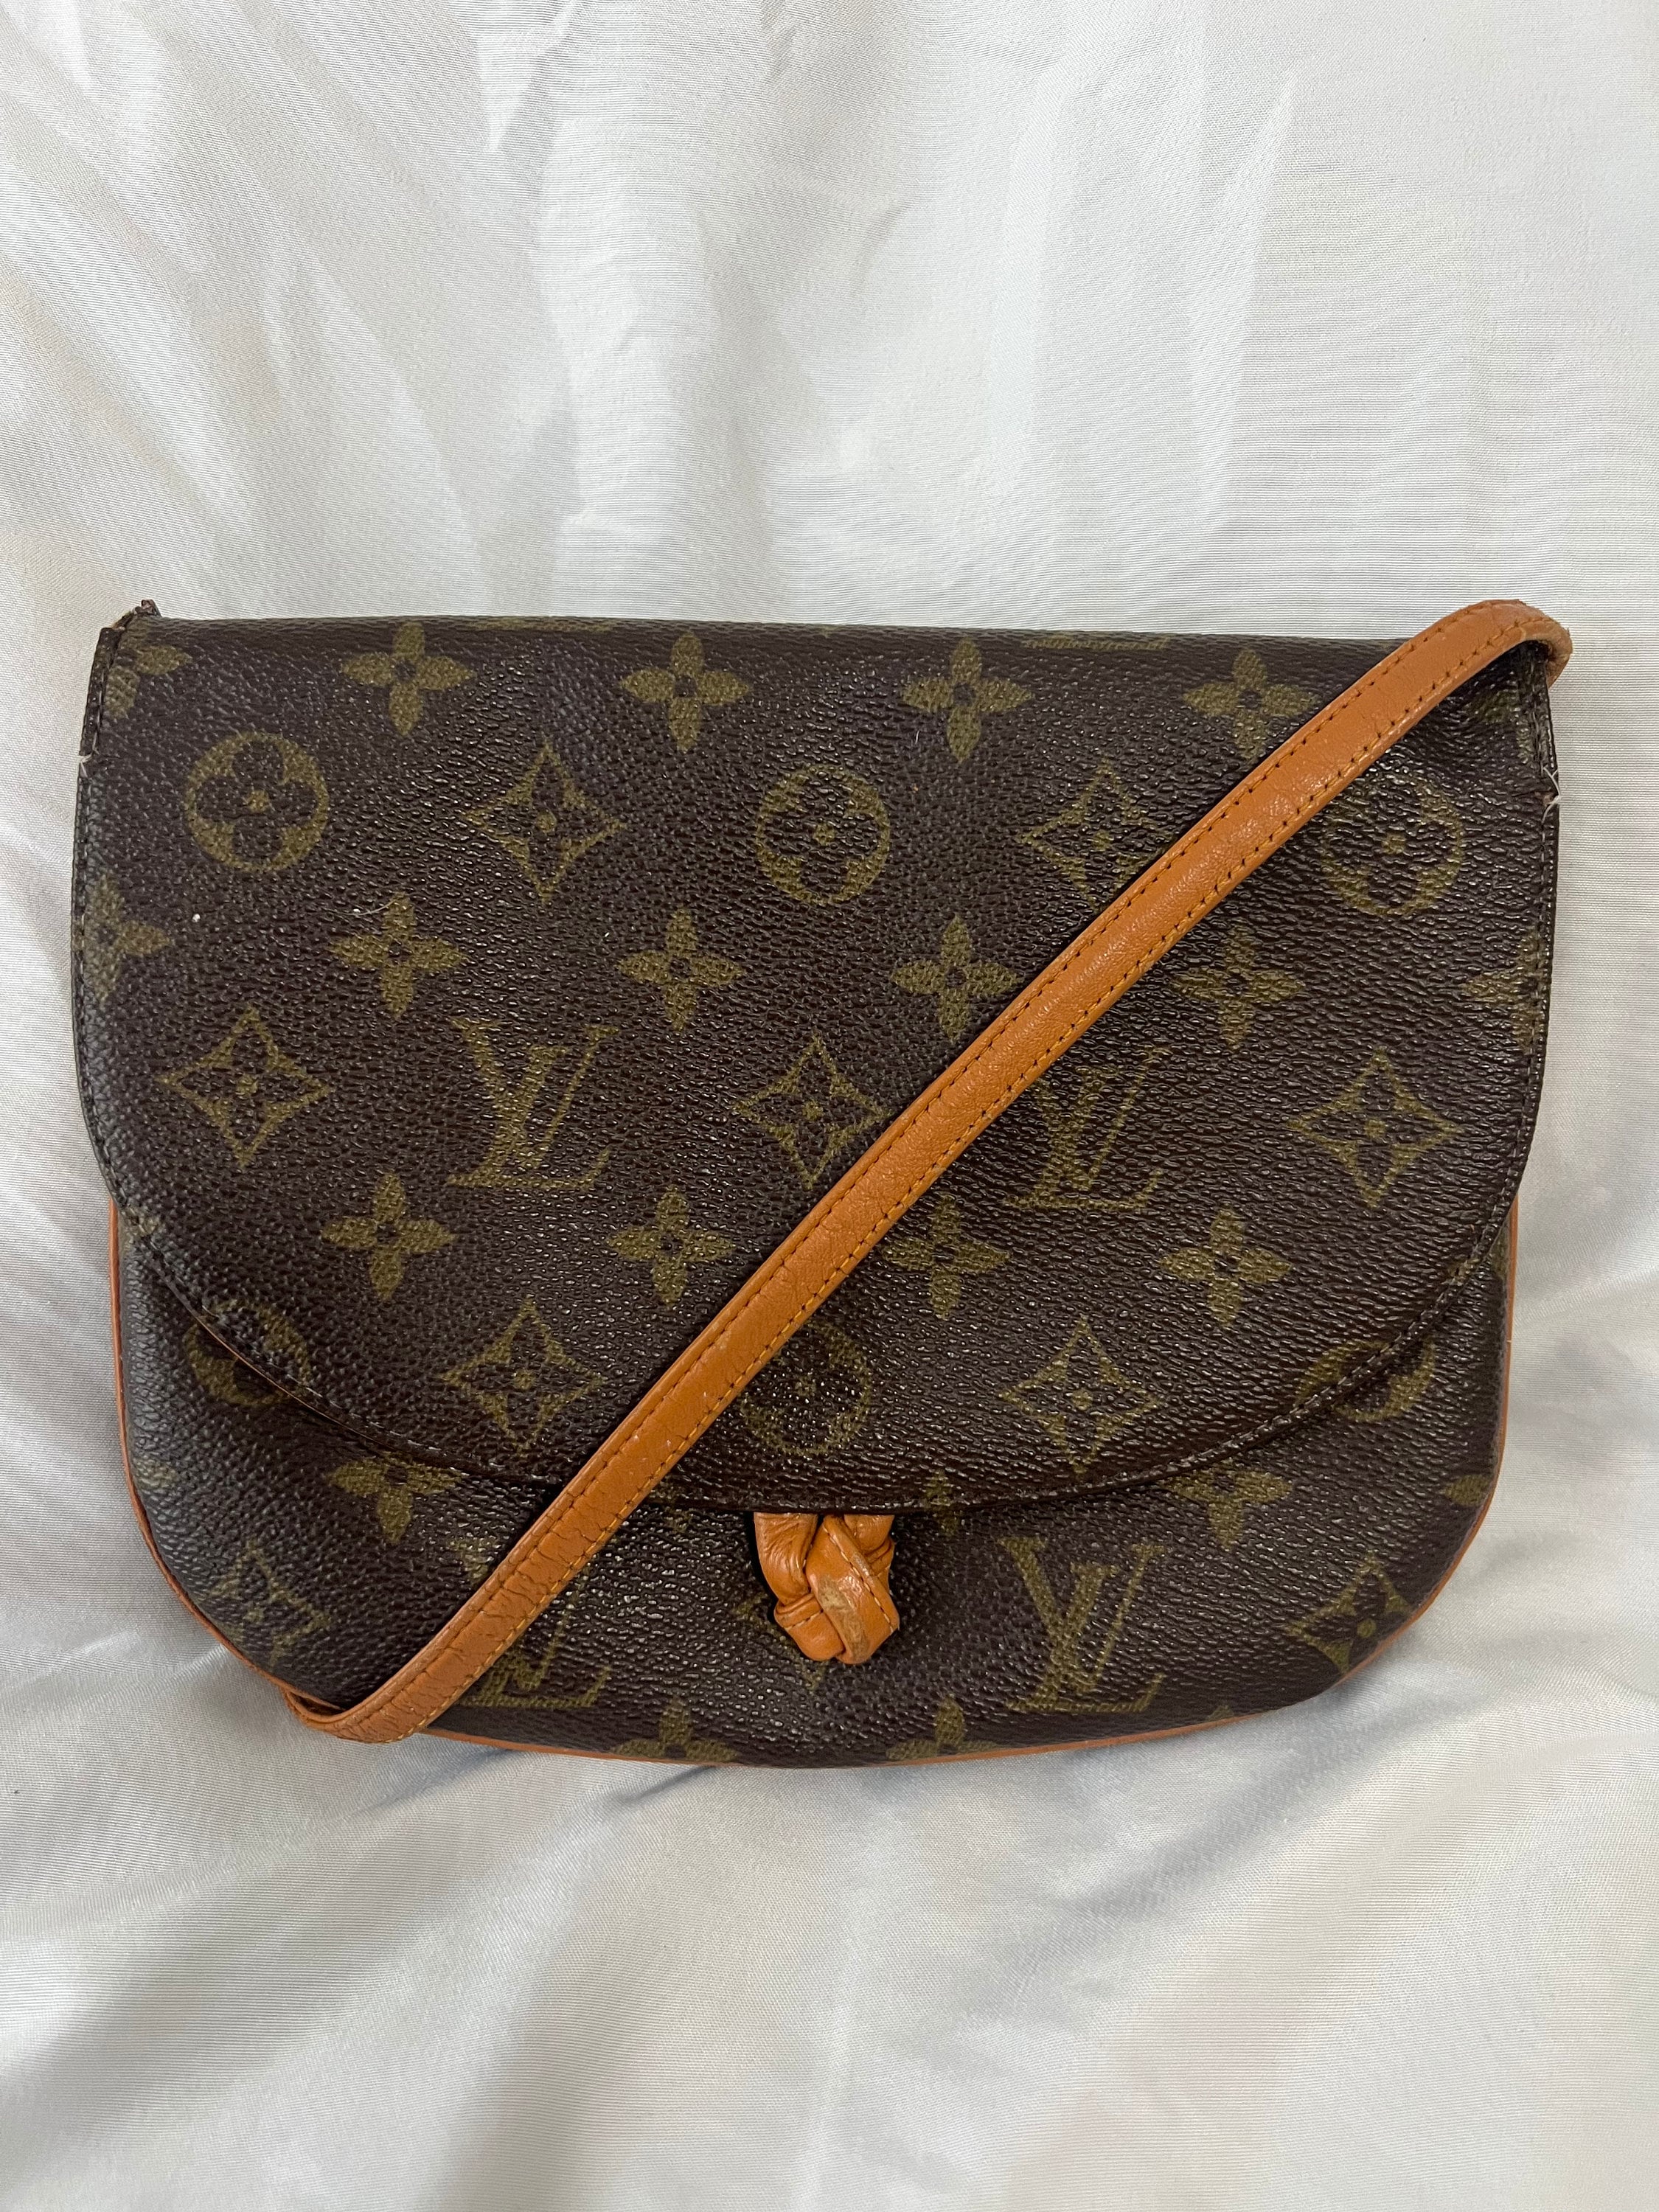 Rare Vintage LOUIS VUITTON 2000 Vernis Leather CLUTCH Handbag Designer  Purse LV